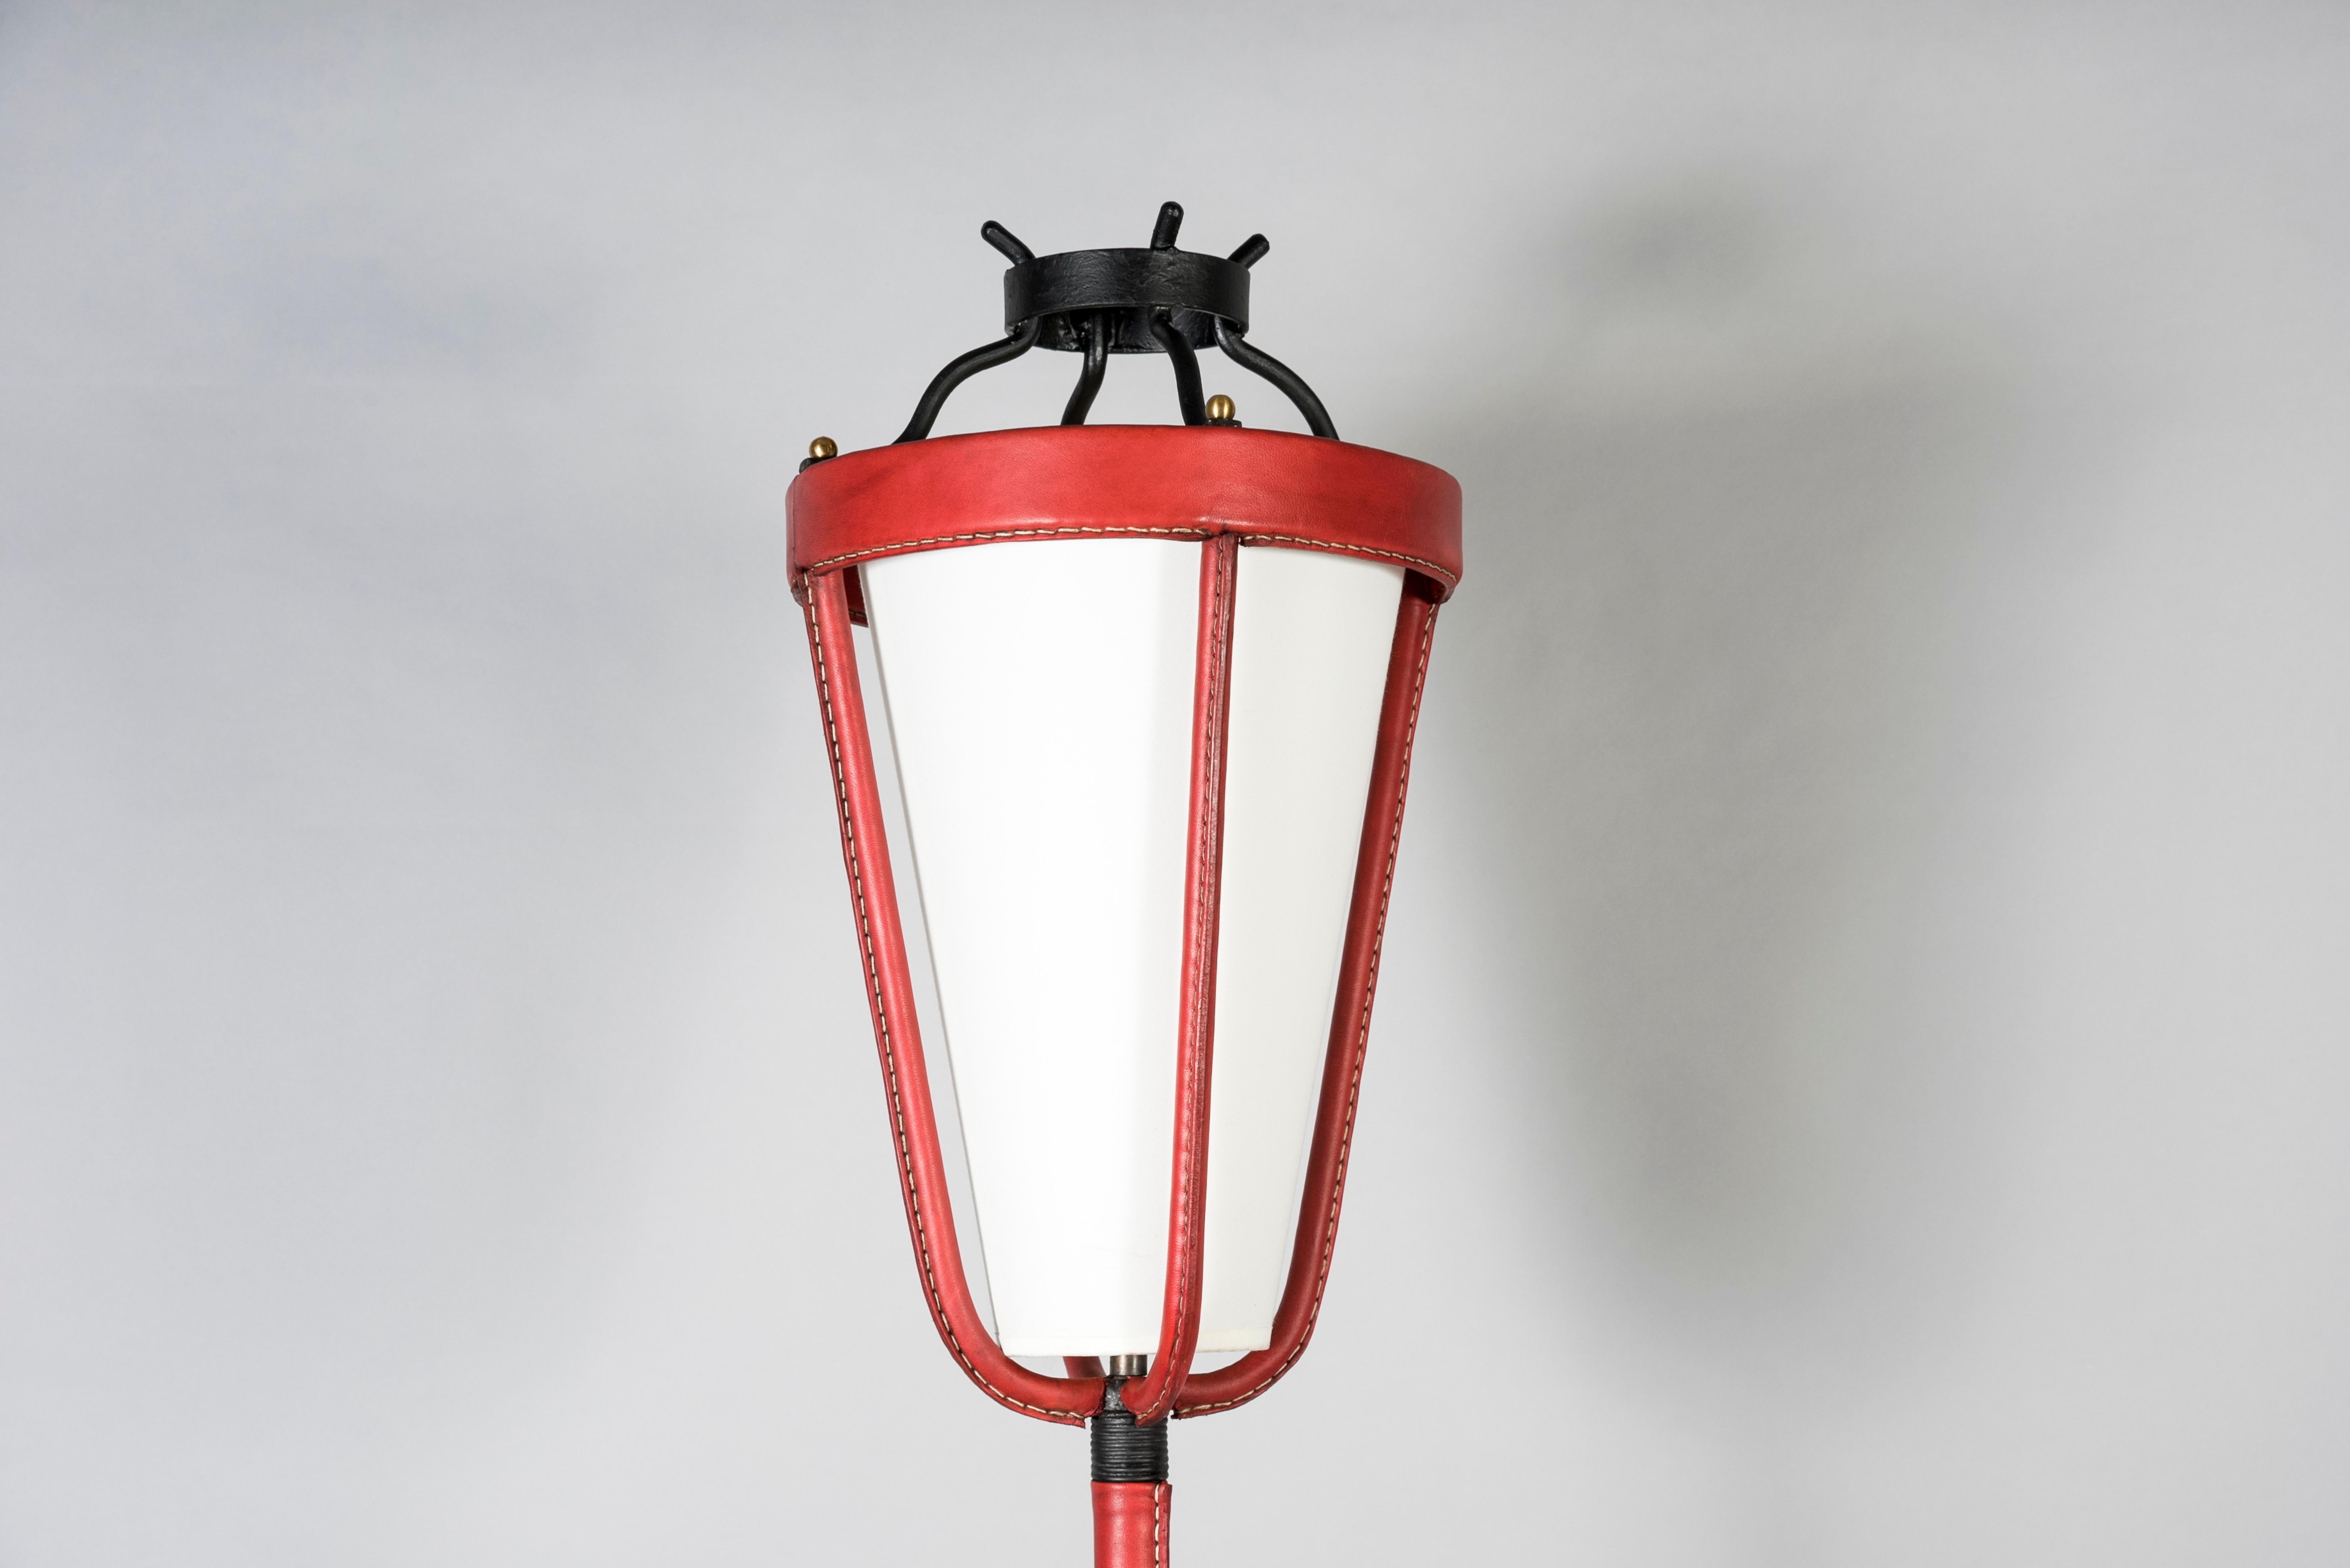 Stehlampe aus genähtem Leder aus den 1950er Jahren, entworfen von Jacques Adnet
Rote Farbe, toller Zustand
Frankreich.